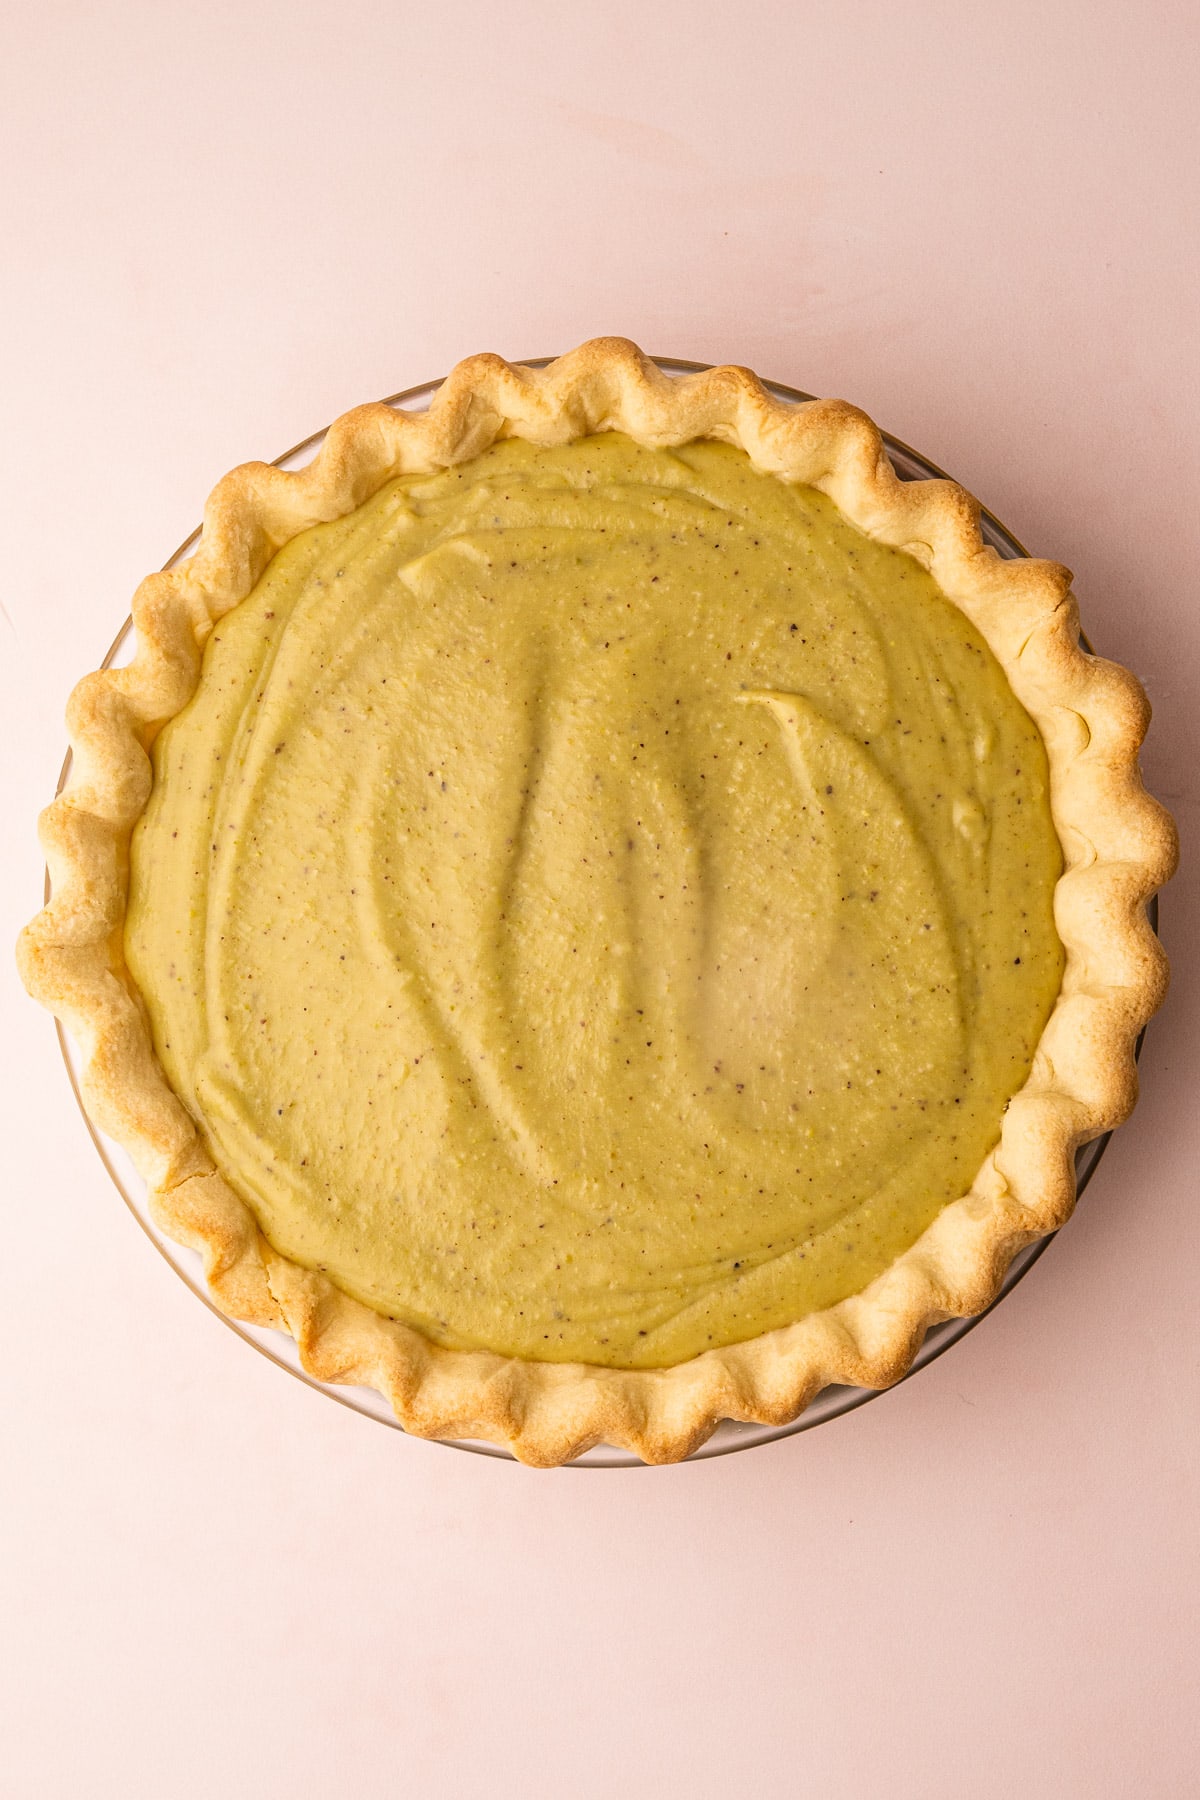 A pistachio cream pie.